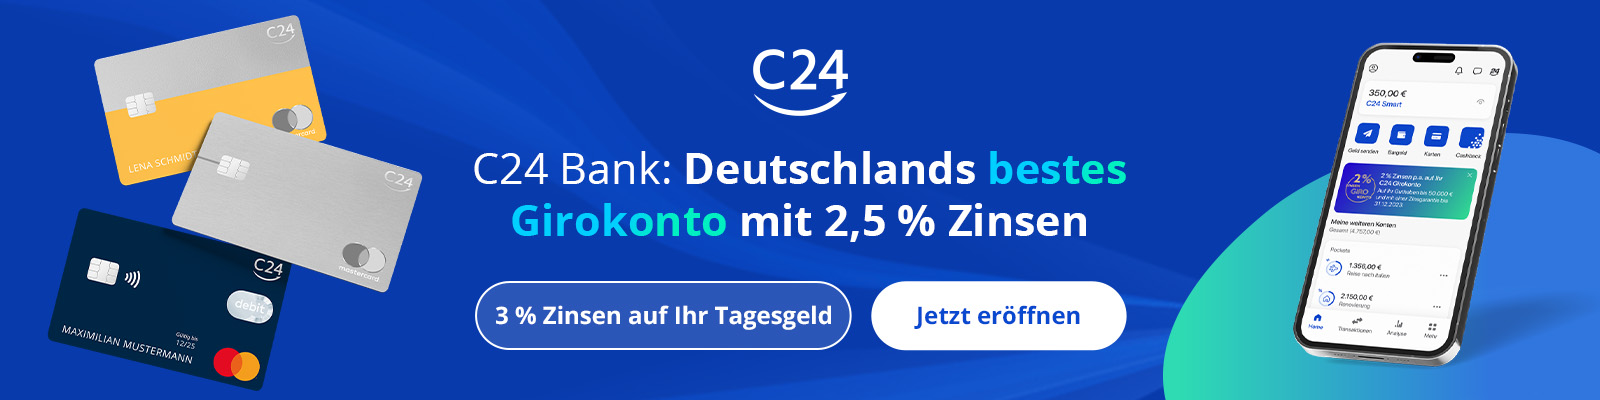 Girokonto - C24 Bank